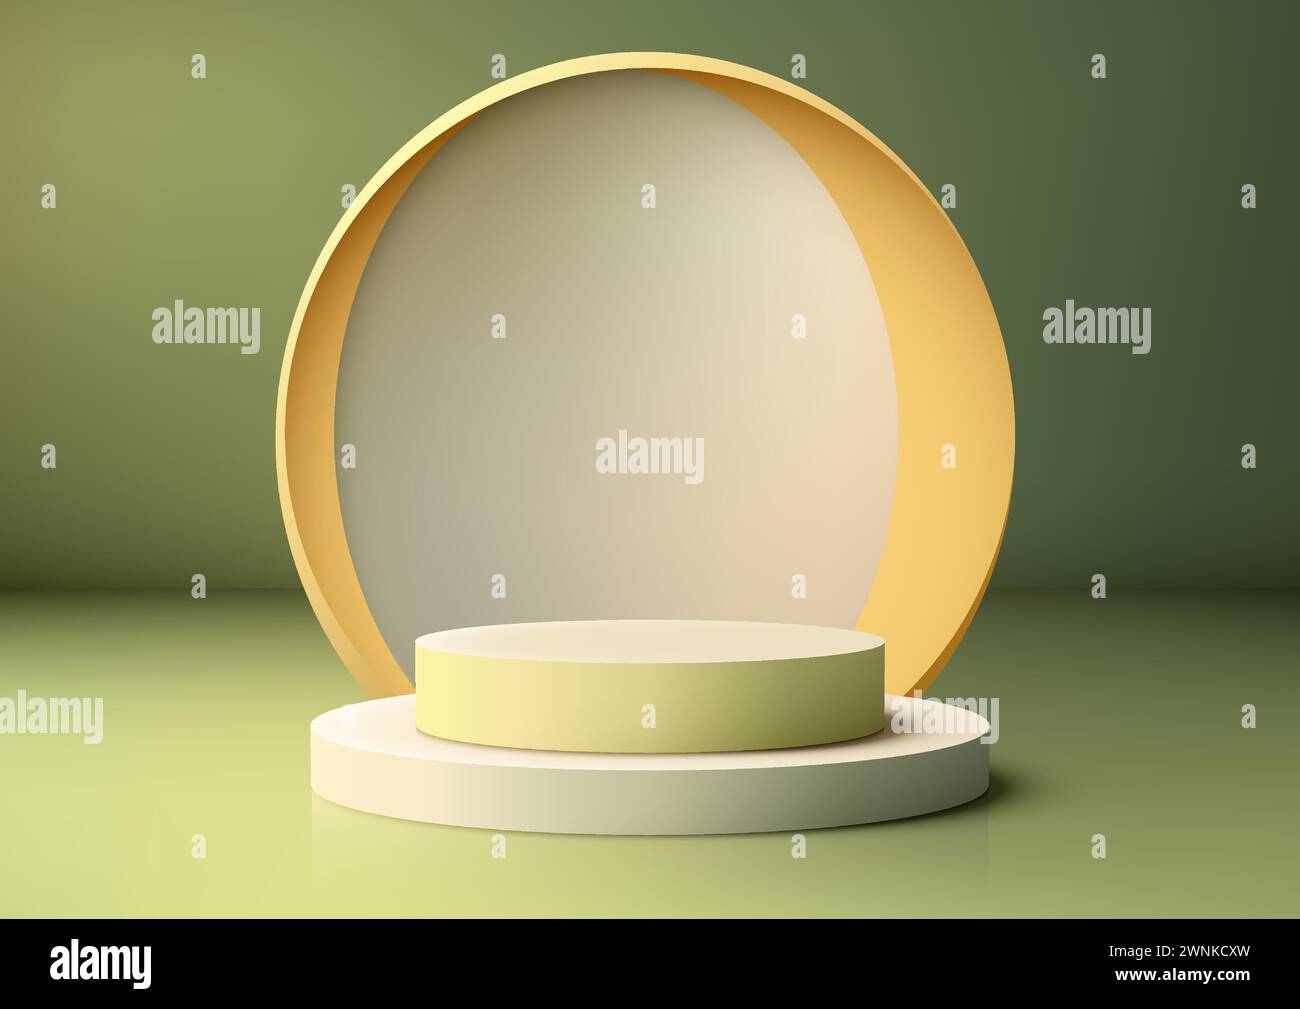 3D-Podium-Display mit minimalistischem Design vor einem kreisförmigen Hintergrund vor leuchtendem grünem Hintergrund, perfekt für die Präsentation Ihrer Produkte. Vect Stock Vektor